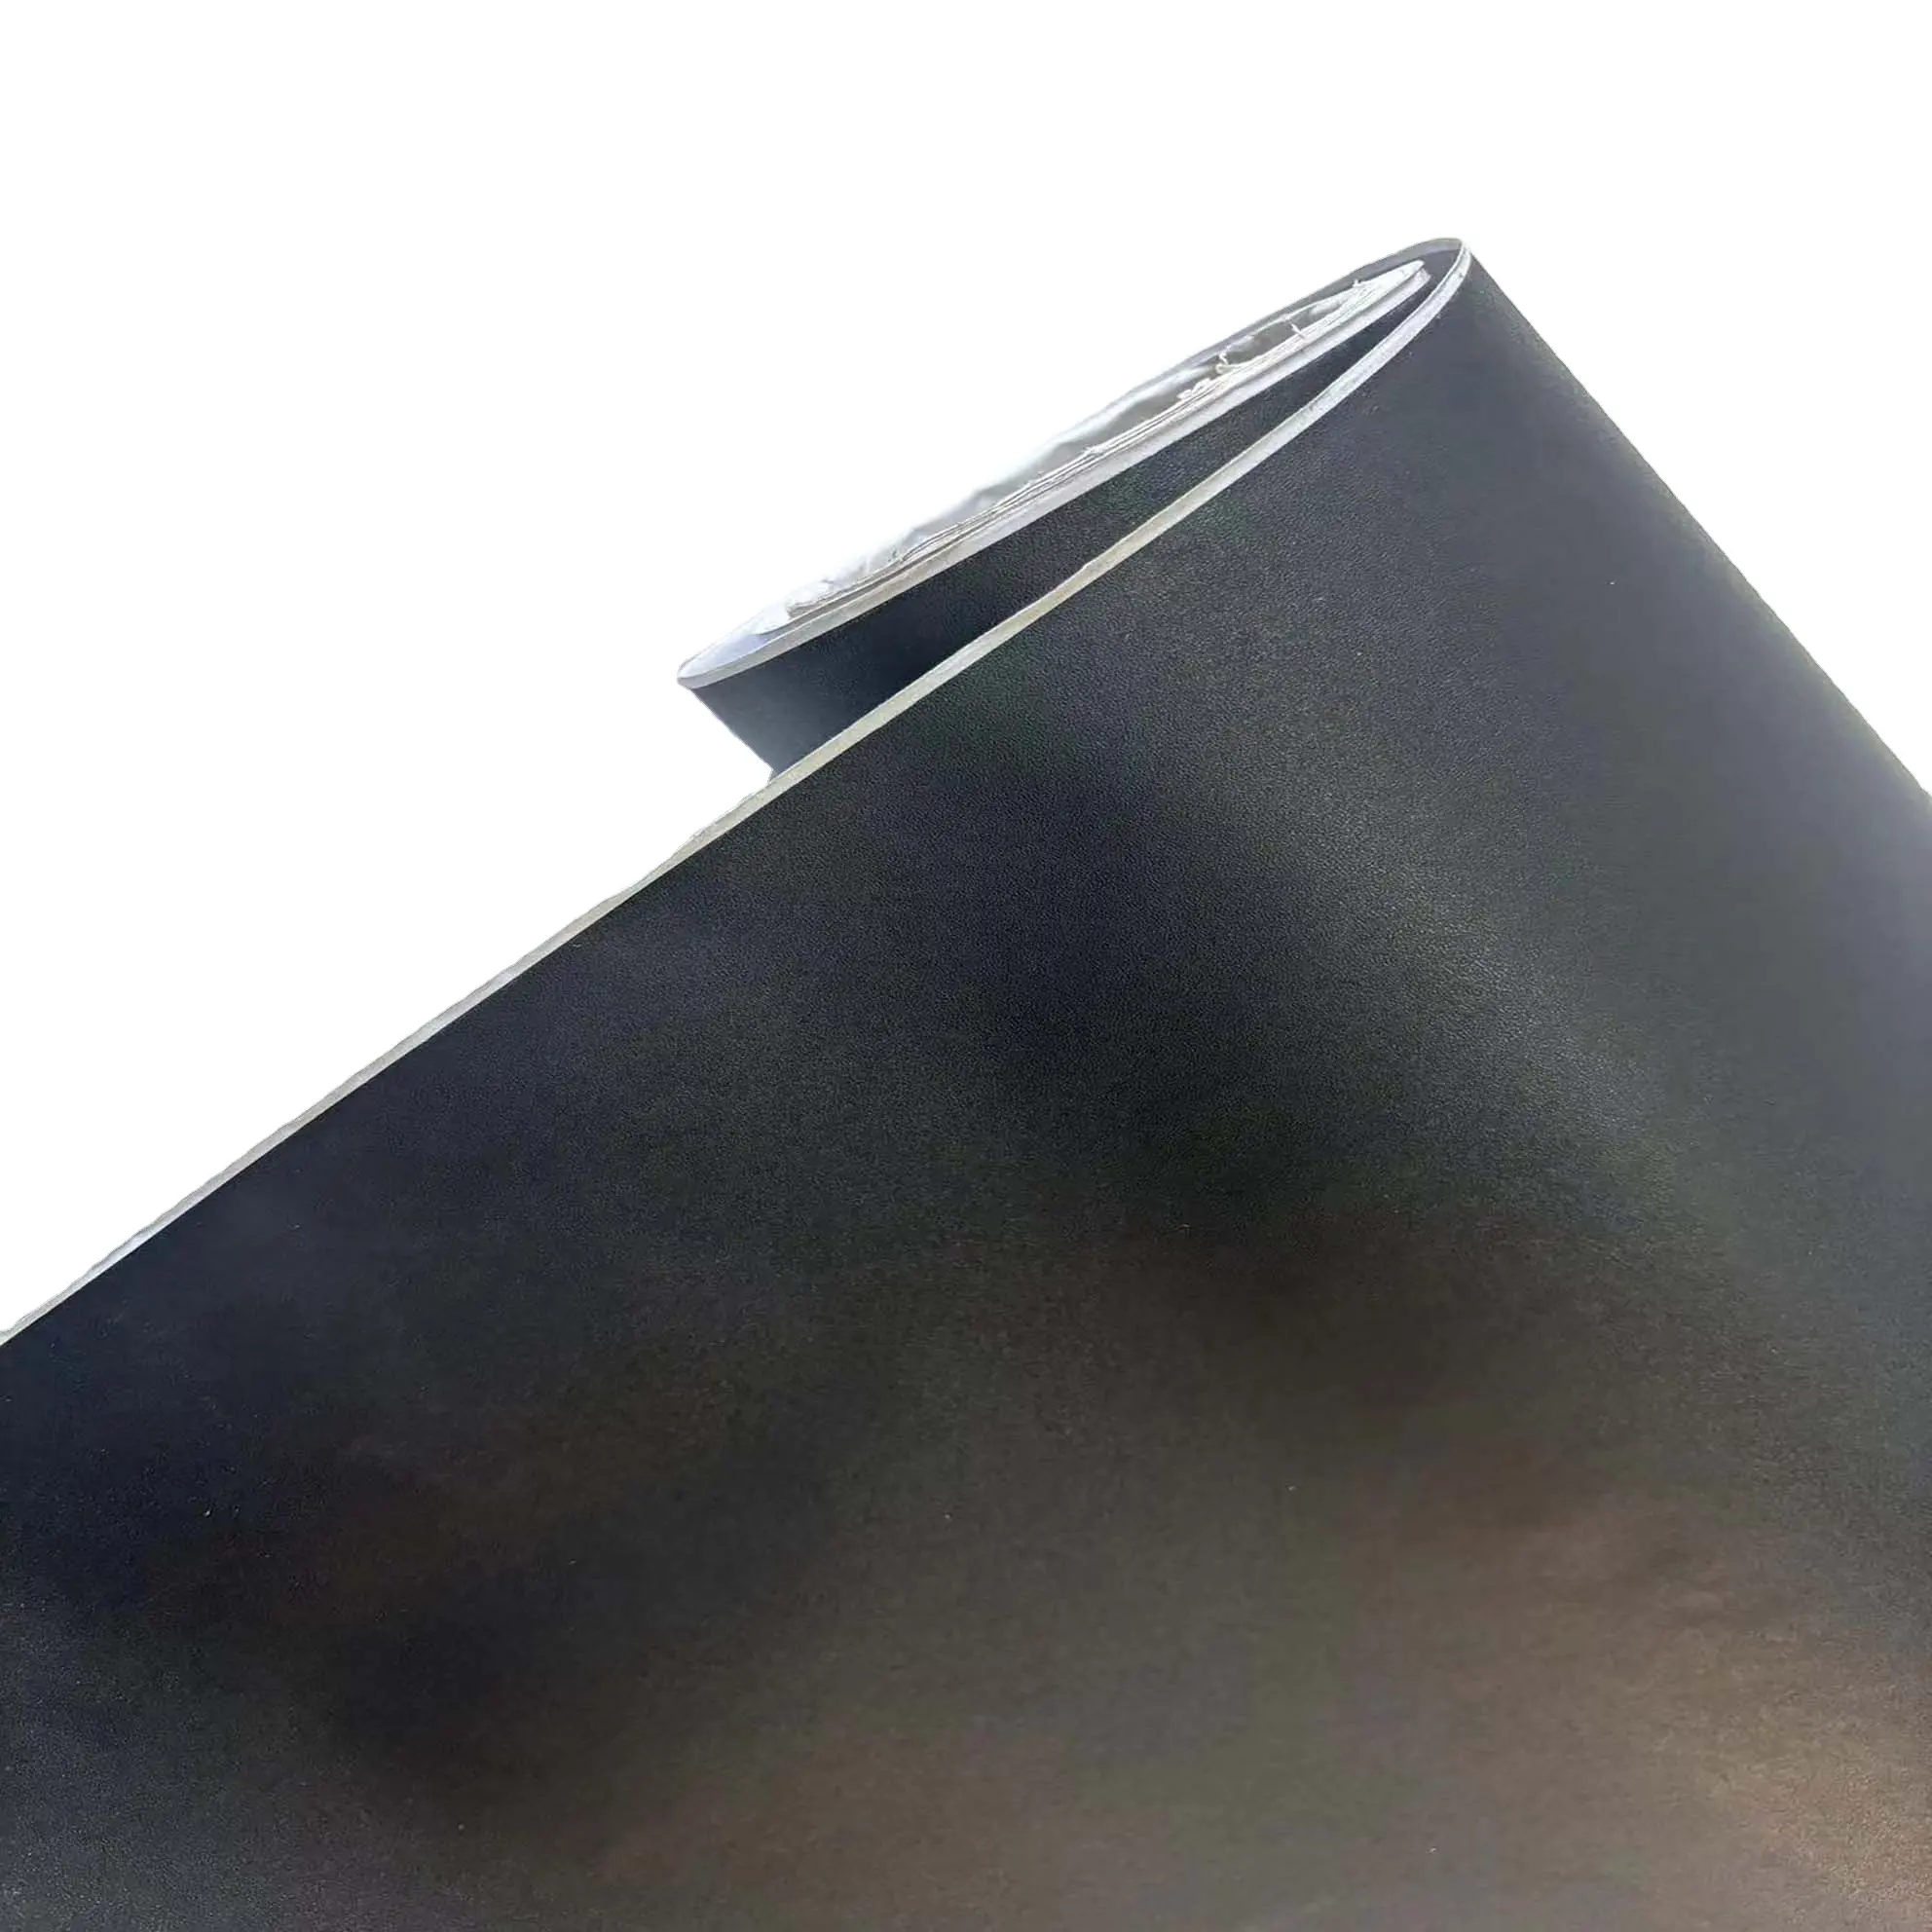 PVC Boeing Film auto-adhésif noir mat rouleau peinture décorative panneau autocollants cadre Photo dos